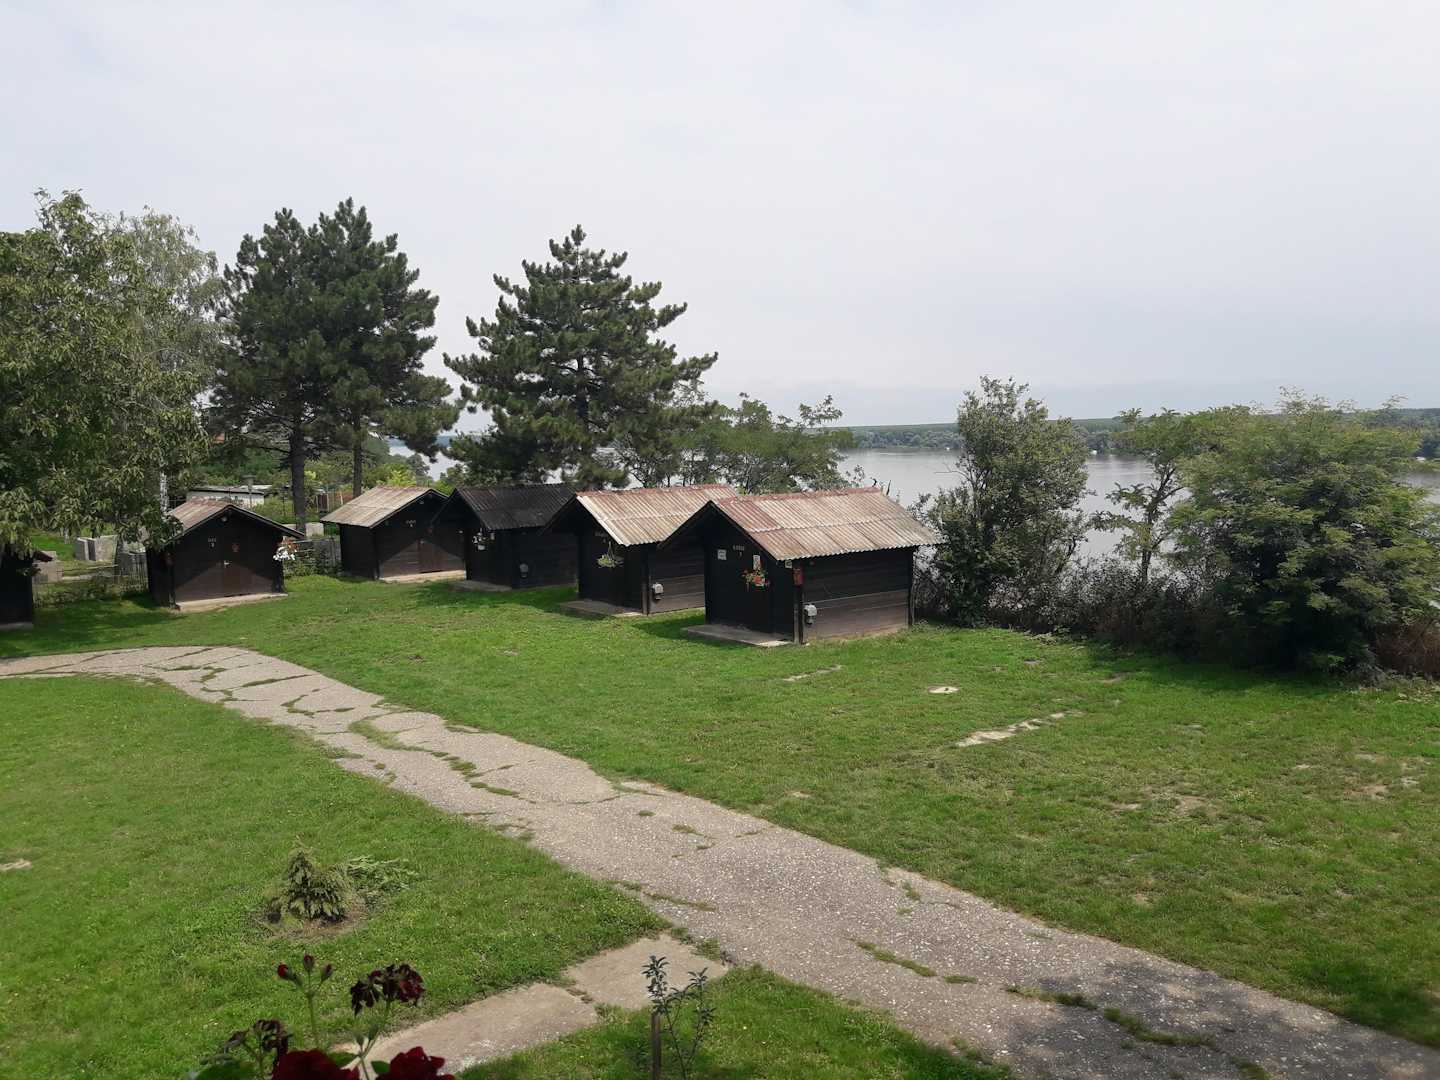 Camping Dunav - Mobilheime auf der Wiese auf dem Campingplatz  mit Blick auf den Donau Fluss